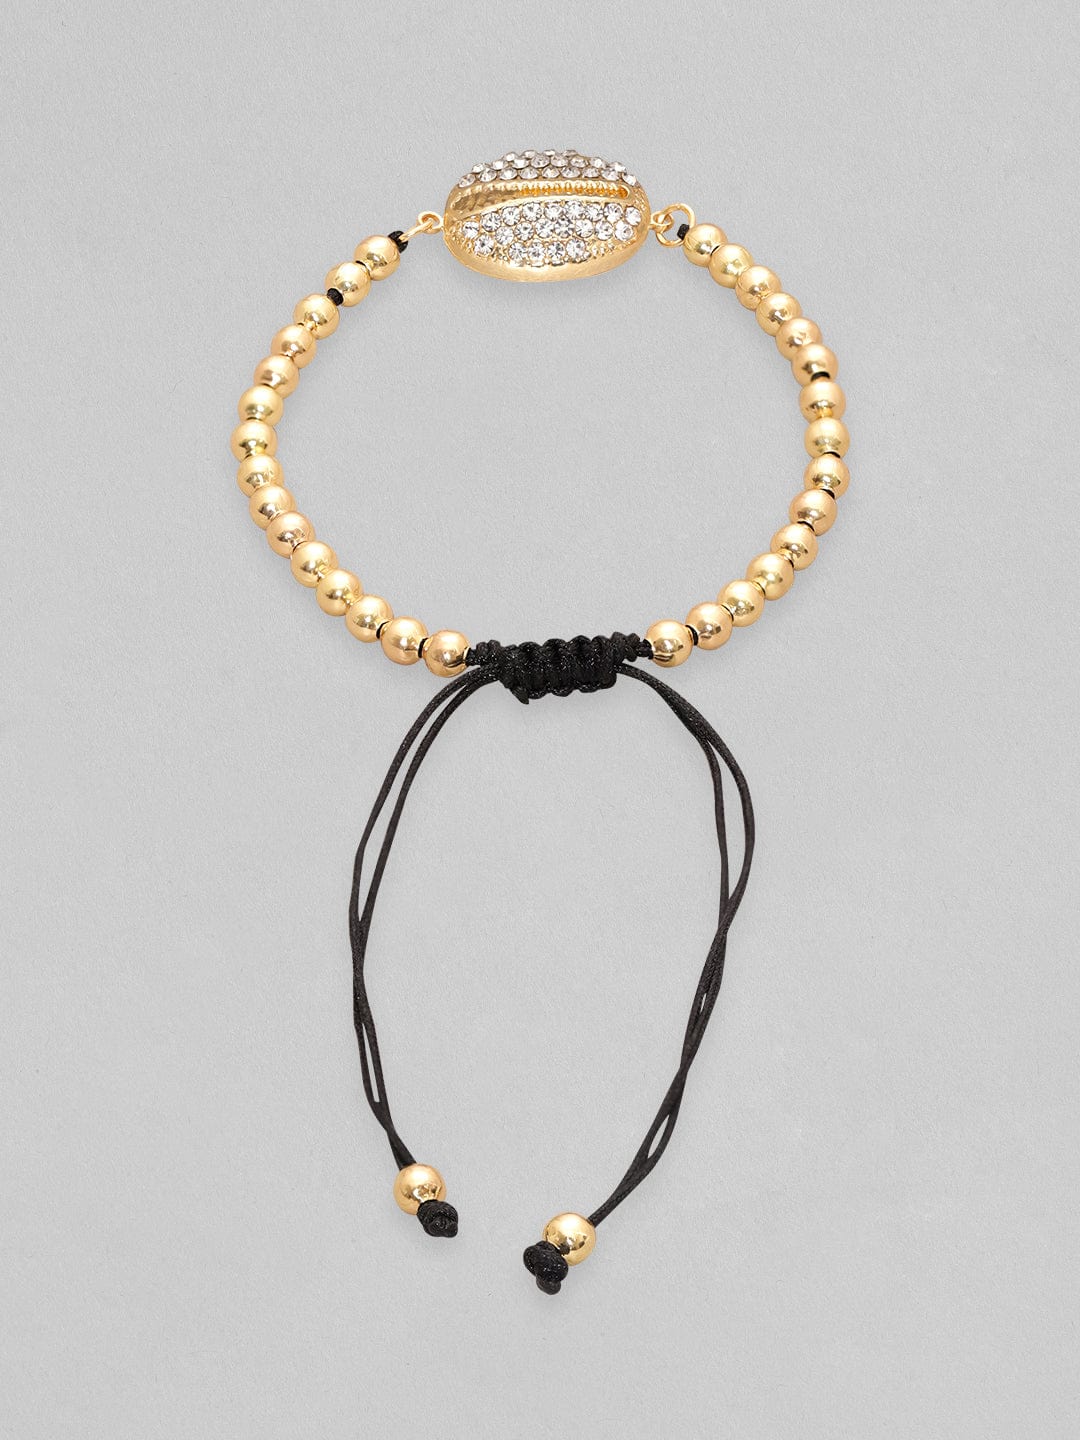 Gold Bead Bracelet, 14K Gold Filled Beaded Bracelet, Gold Bead Bracelet  With Diamond Bead, Gold Ball Bracelet, CZ Diamond Bead Bracelet - Etsy  Denmark